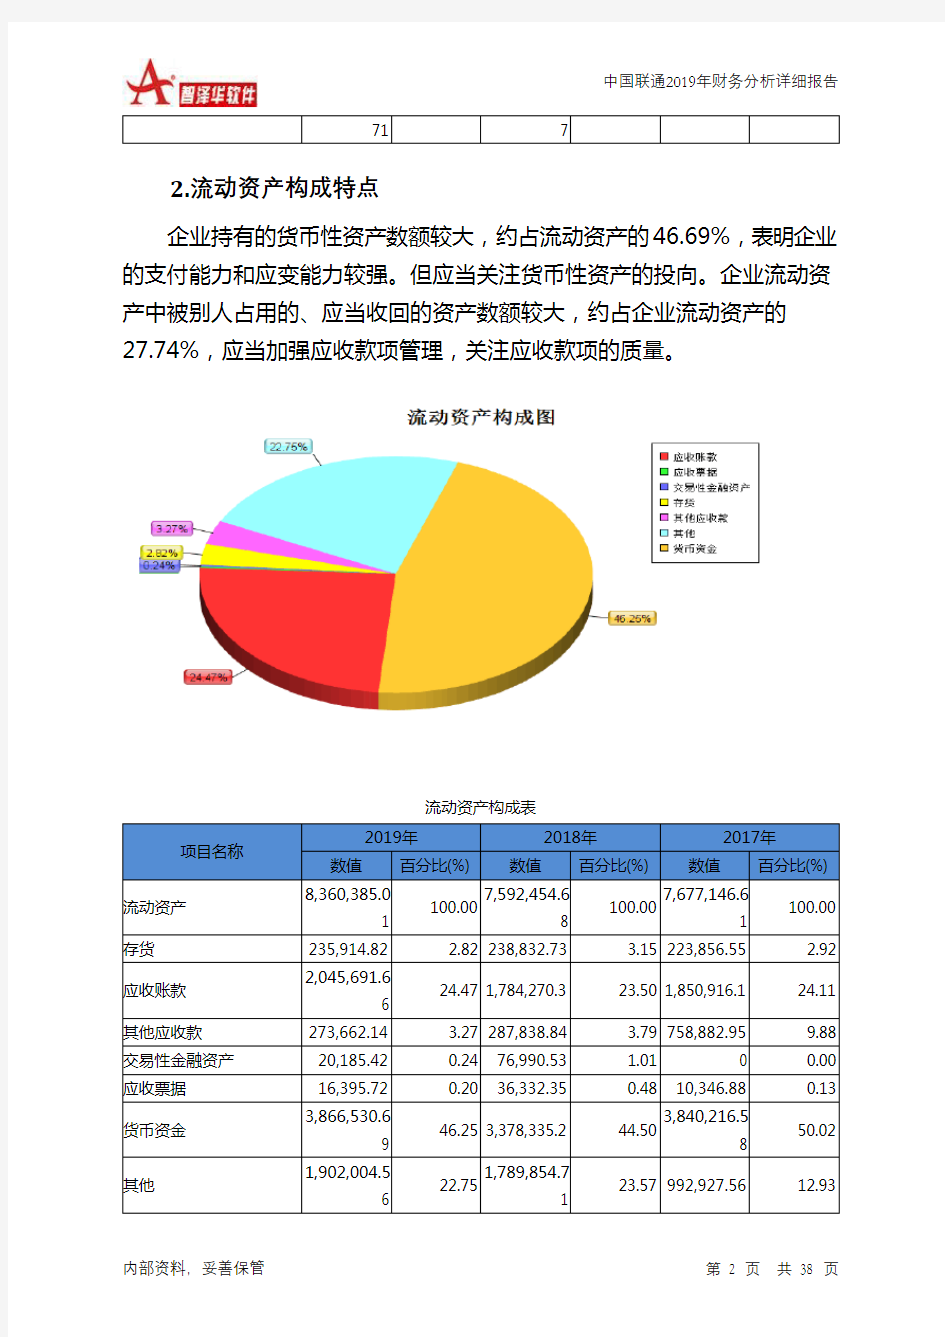 中国联通2019年财务分析详细报告